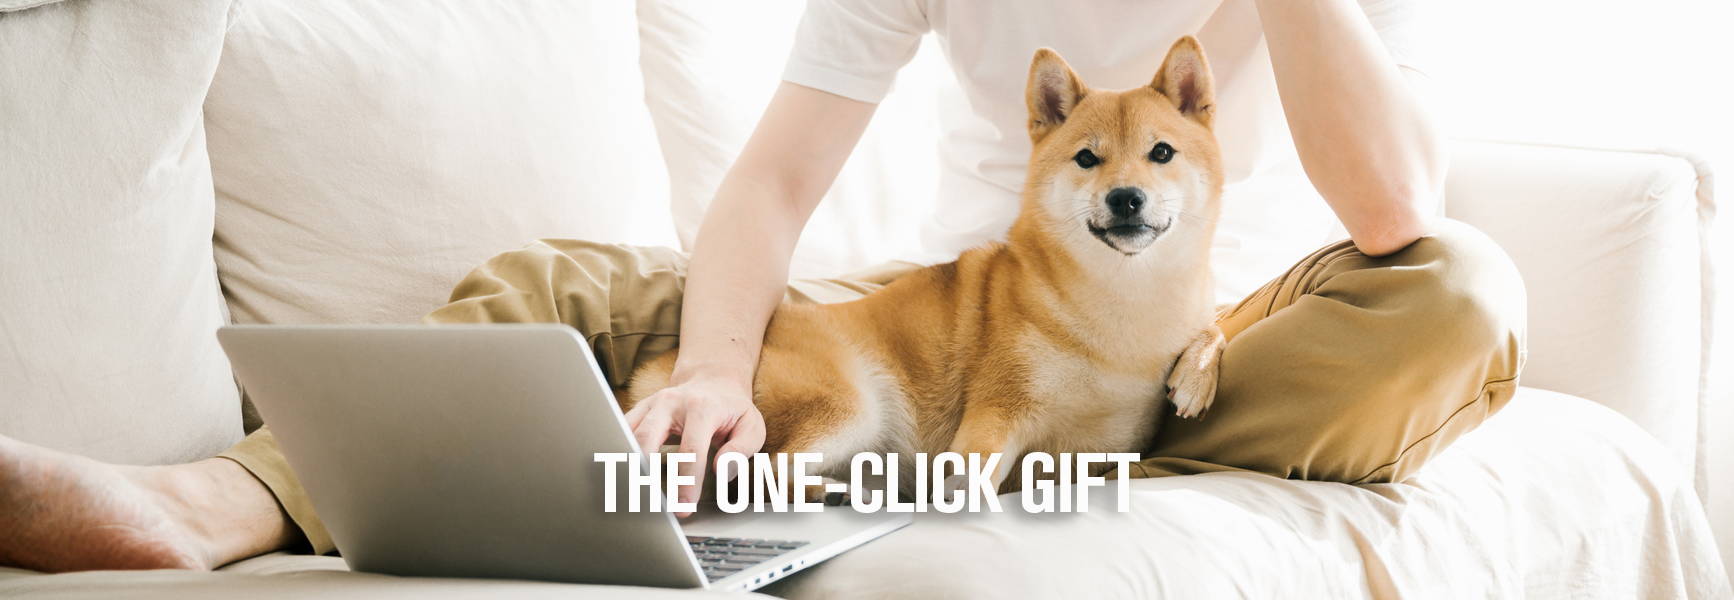 一只毛茸茸的狗狗躺在白色沙发上，他们一起看笔记本电脑